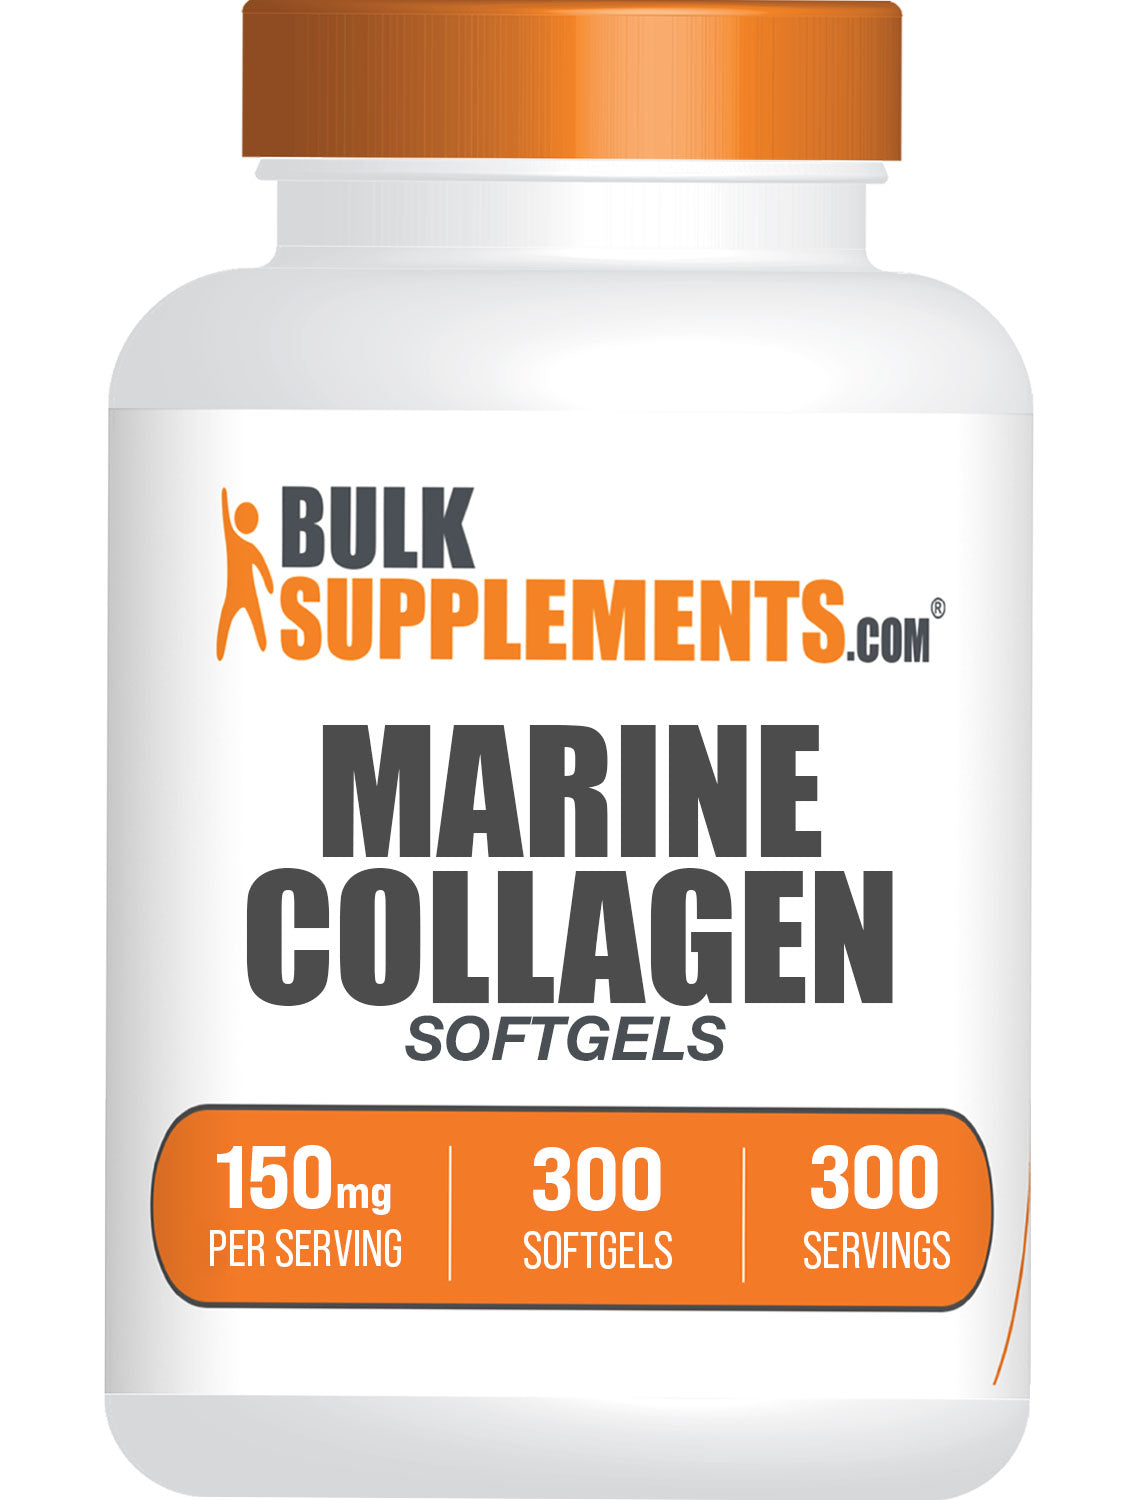 BulkSupplements Marine Collagen Softgels 150mg per serving 300 Softgels bottle